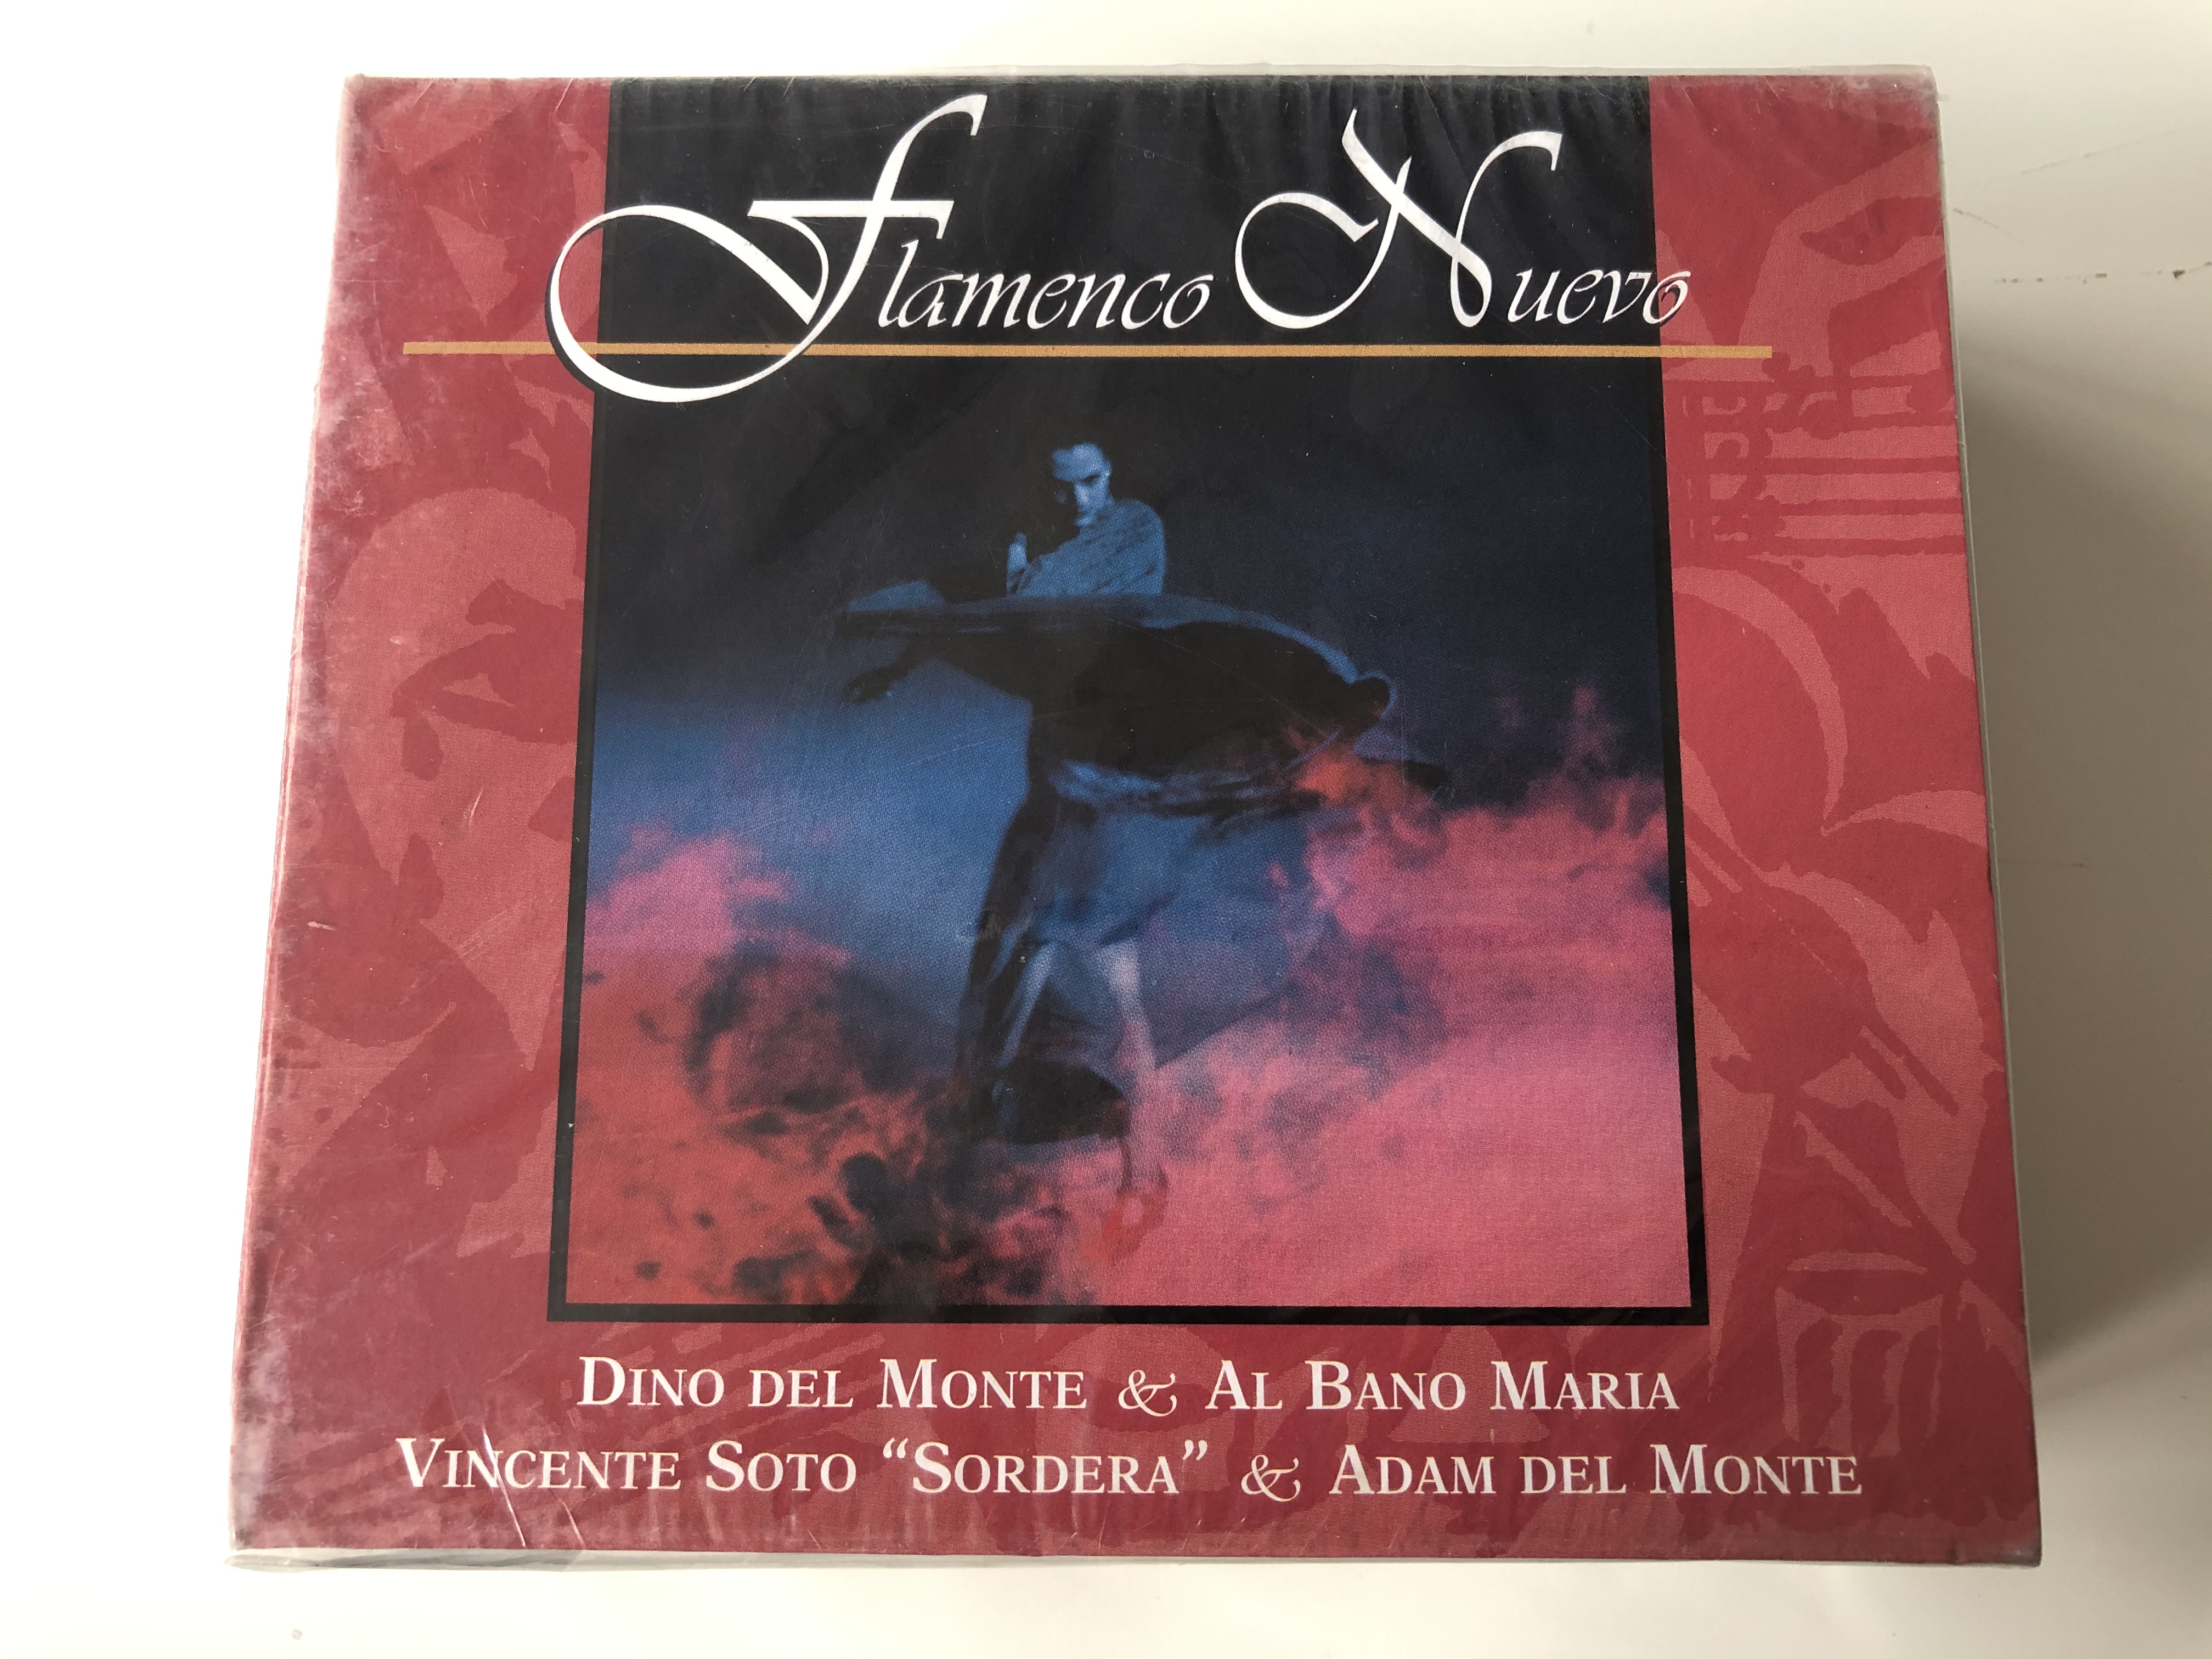 flamenco-nuevo-dino-del-monte-al-bano-maria-vincente-soto-sordera-adam-del-monte-sonyfolk-4x-audio-cd-2000-box-set-204975-352-1-.jpg